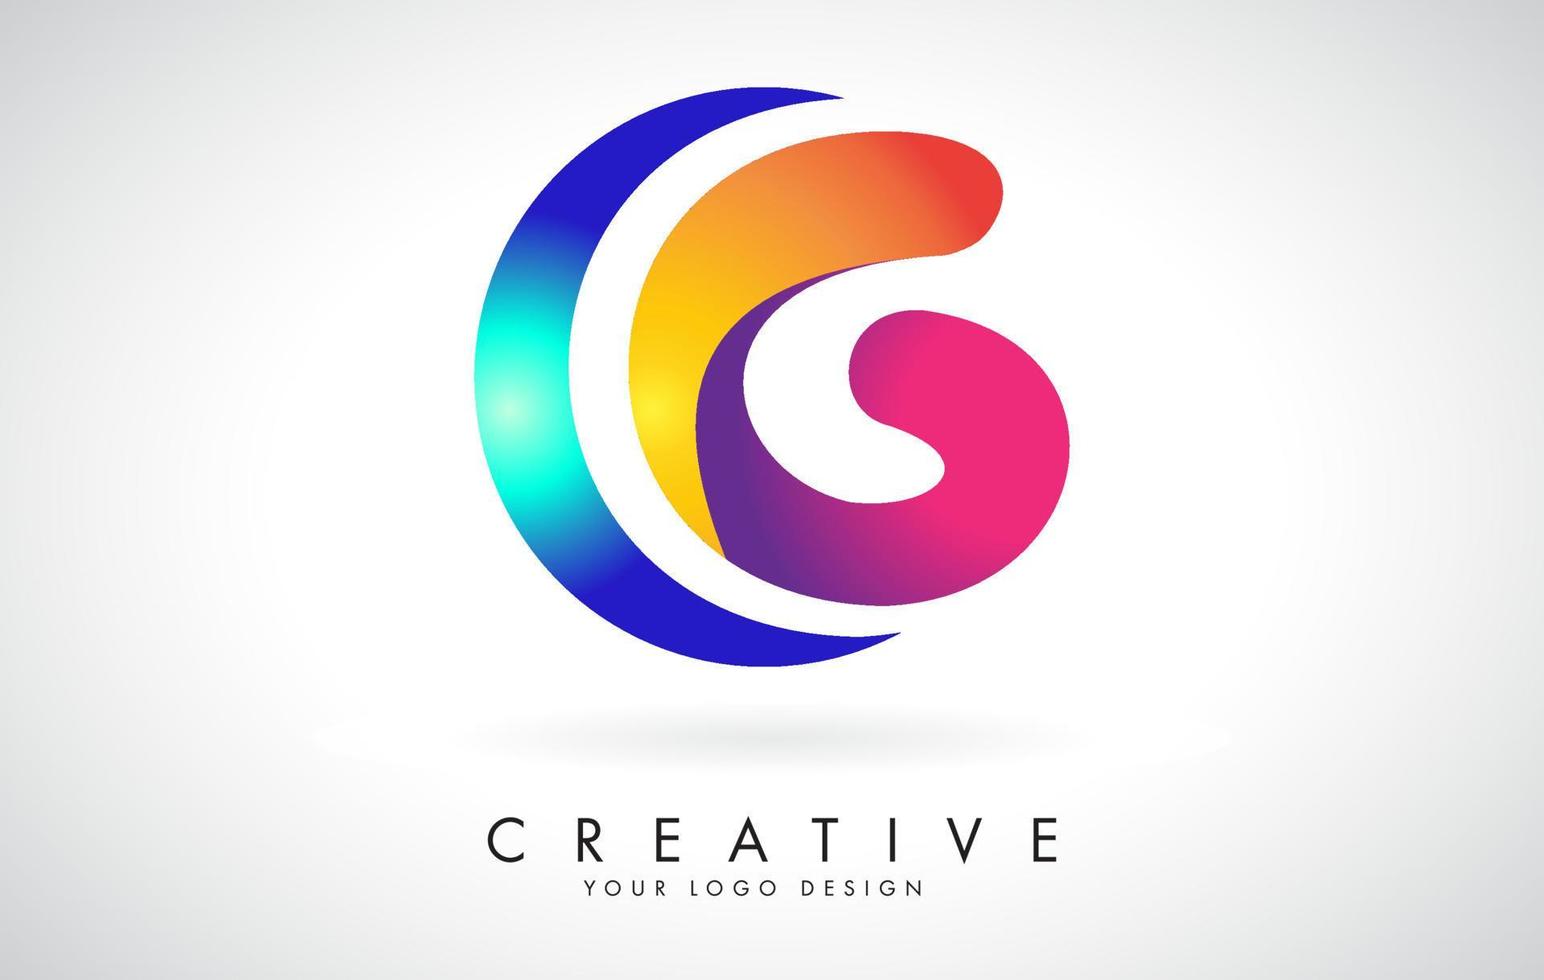 design de logotipo azul e rosa criativo letra g com pontos. entretenimento corporativo amigável, mídia, tecnologia, design de vetor de negócios digitais com gotas.